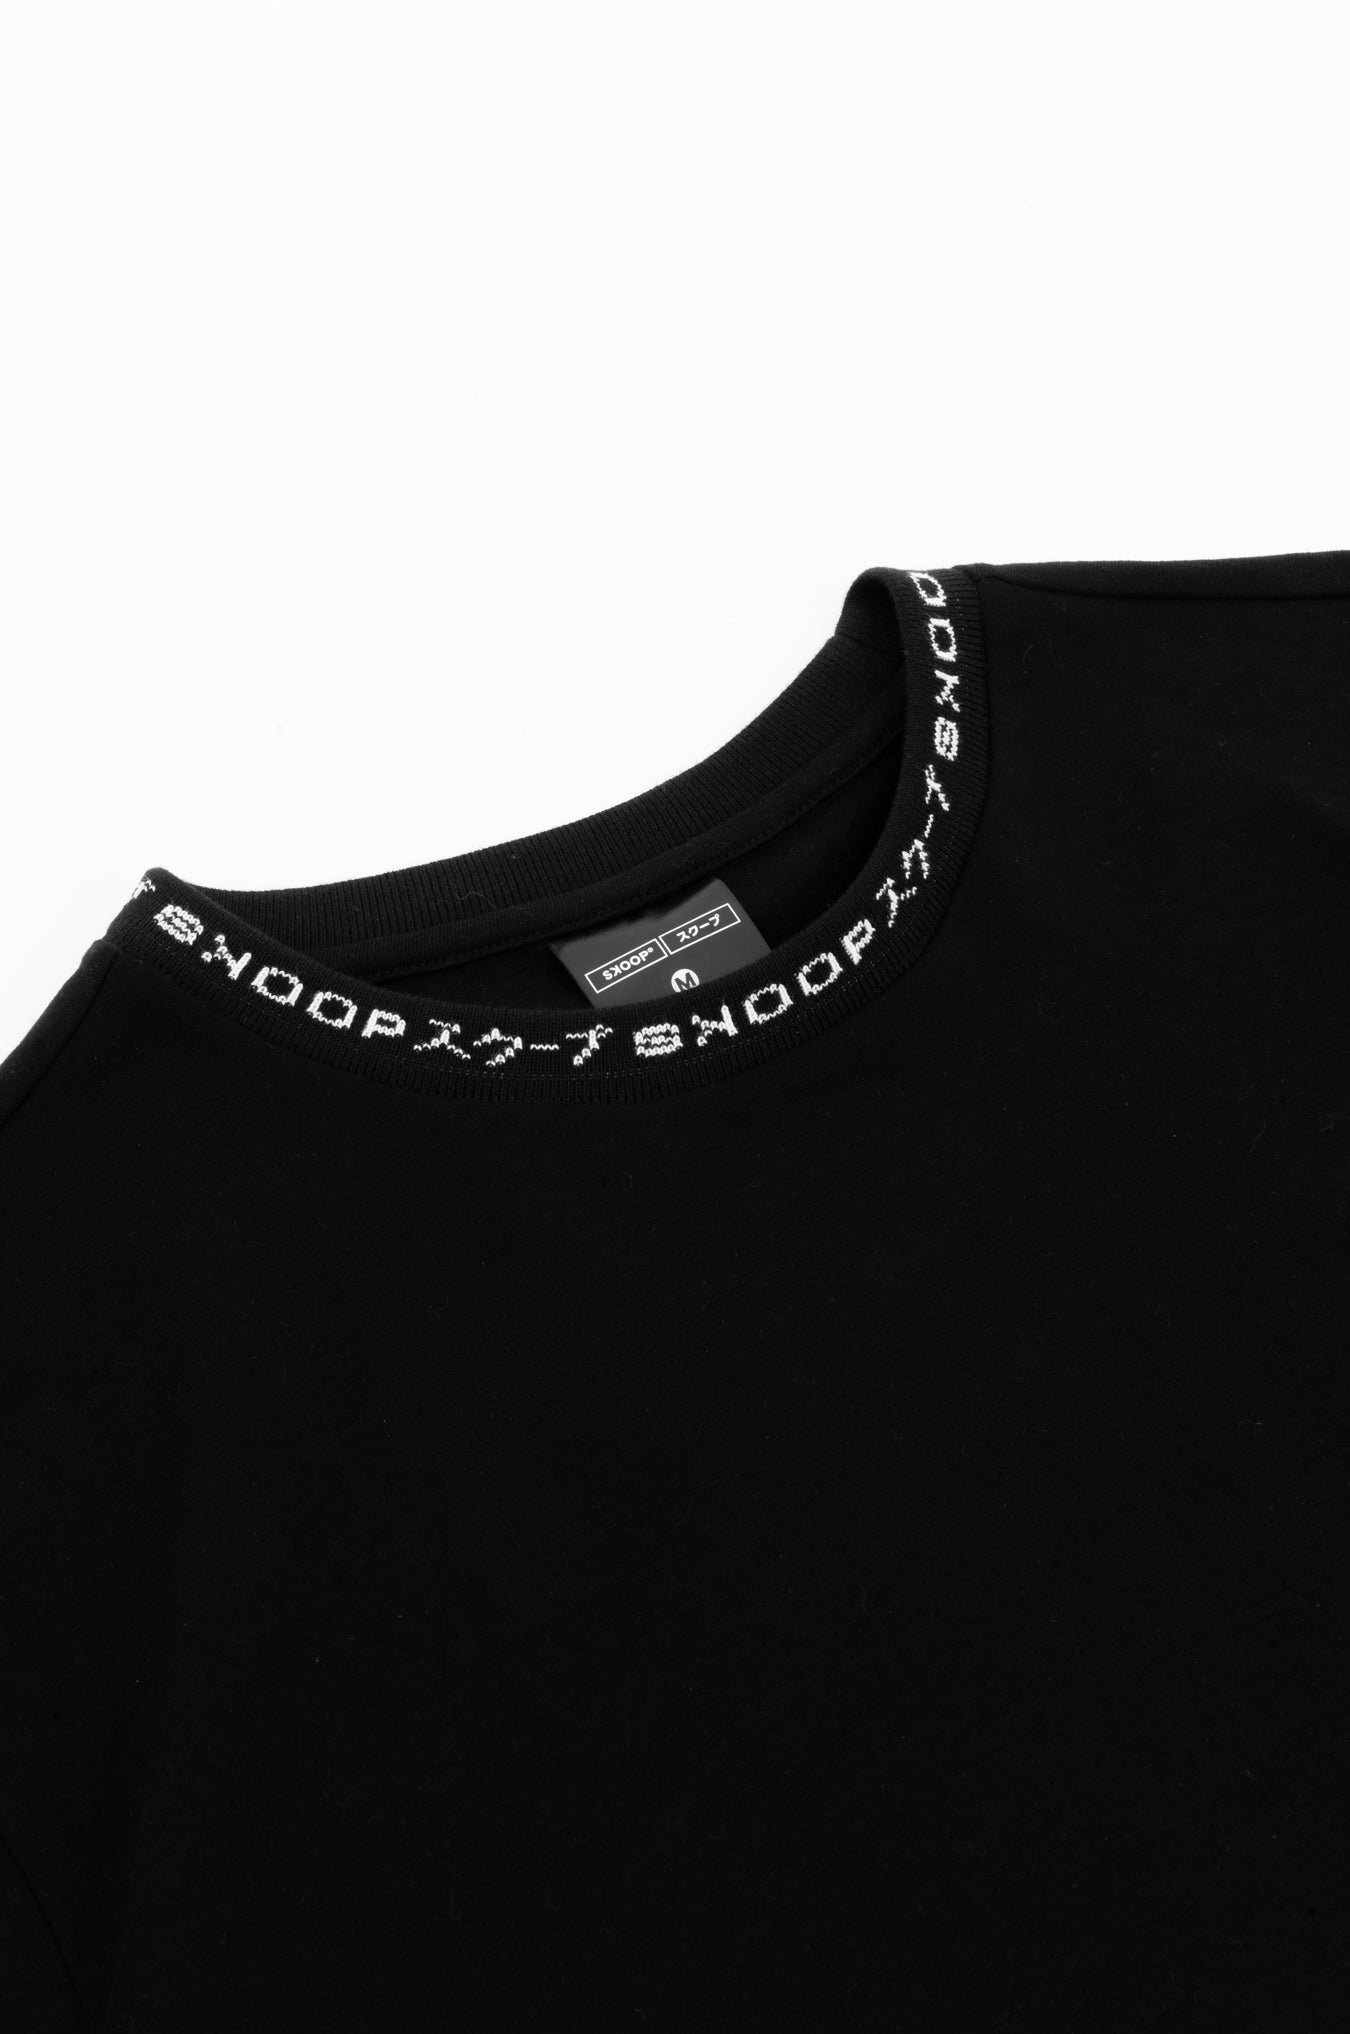 SKOOP® Evergreen Shirt Black - SKOOP Kommunity